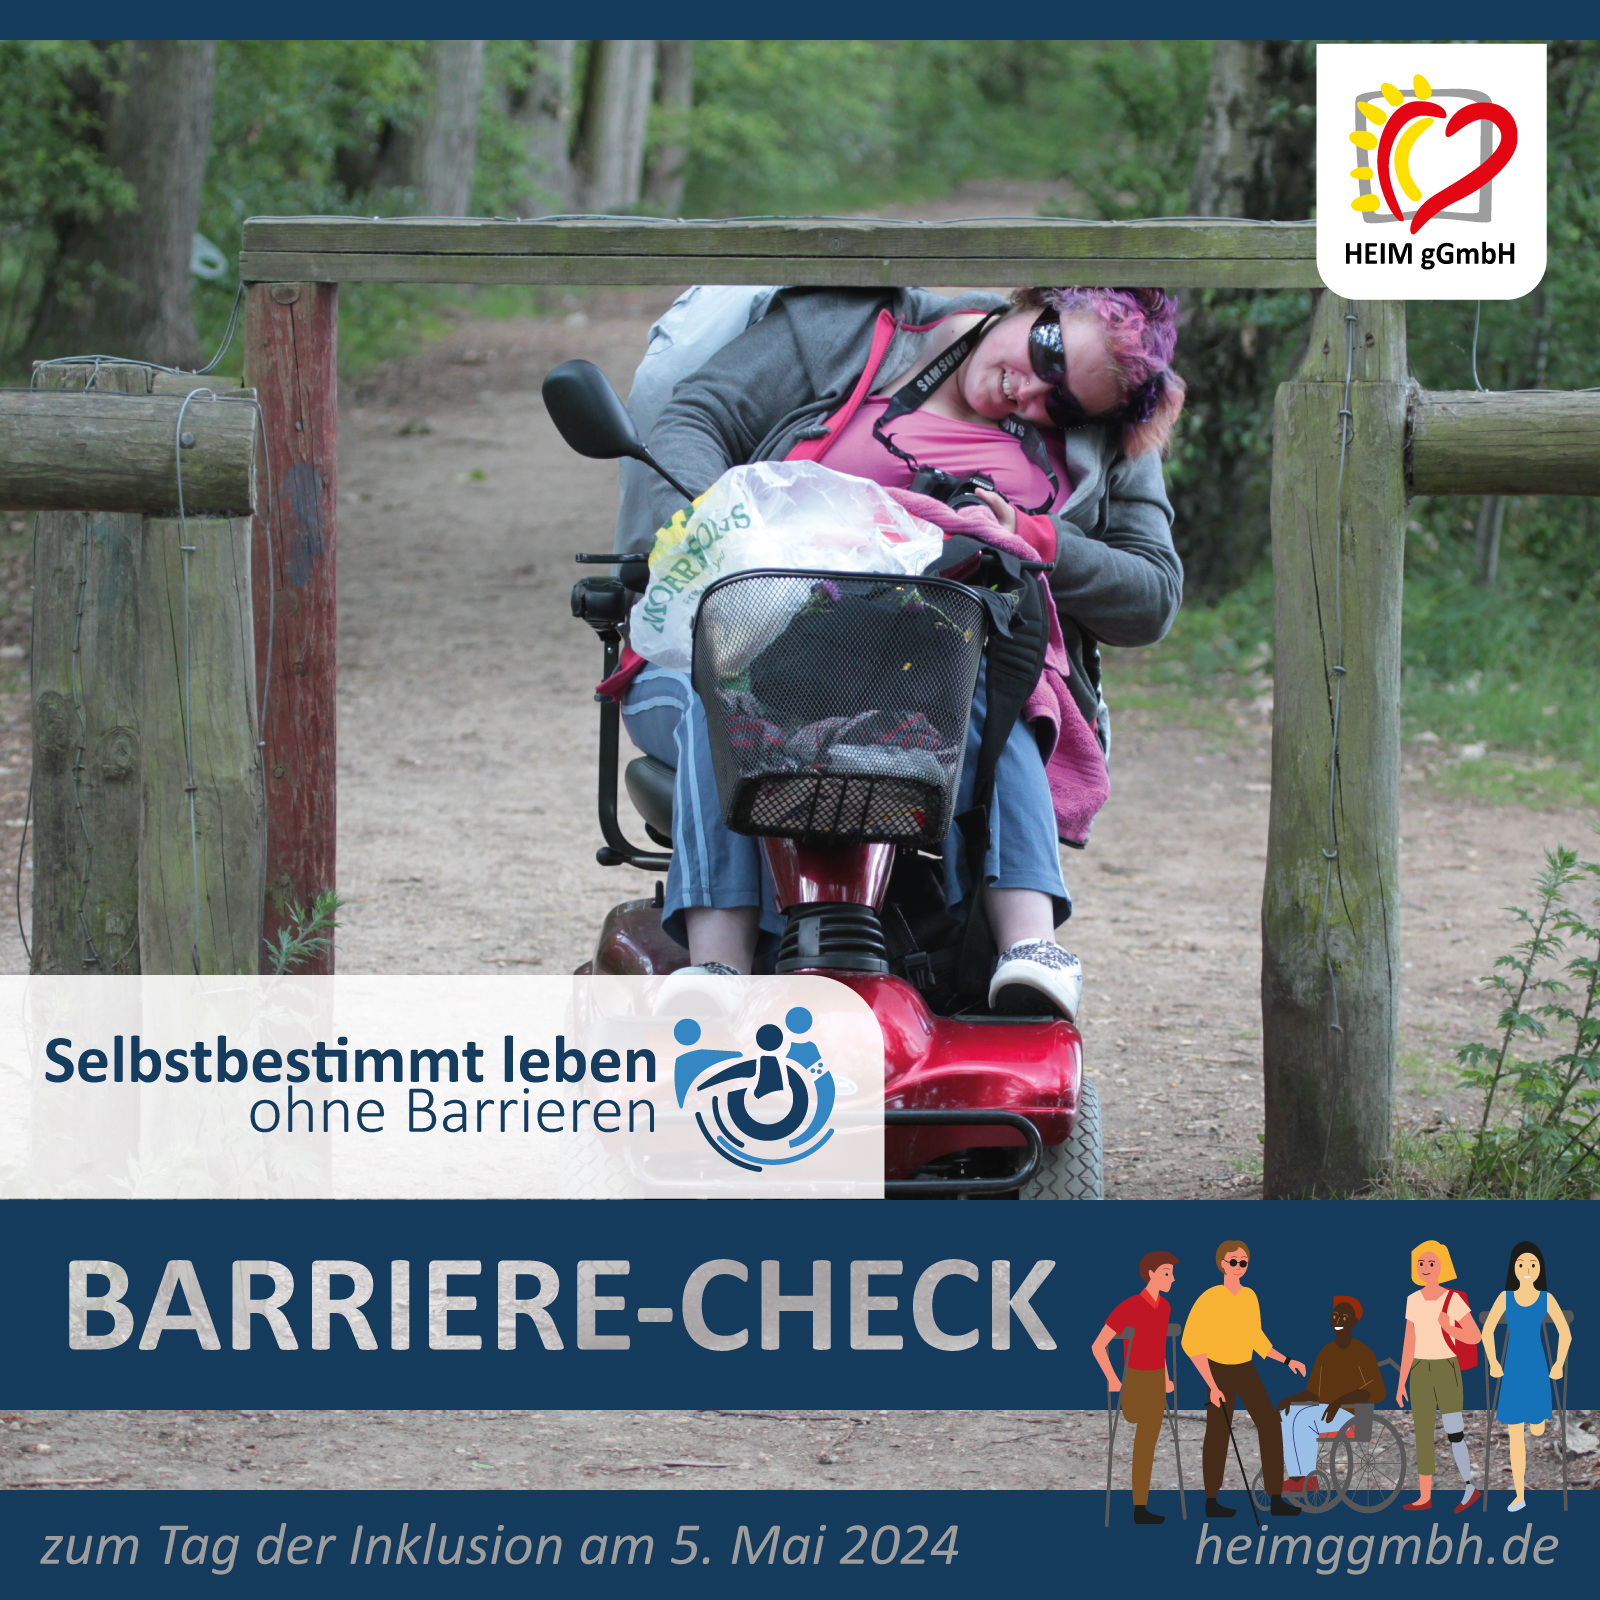 Barrierearm in Chemnitz und Umgebung mit dem Barriere-Check zum tag der Inklusion am 5. Mai 2024 in Chemnitz